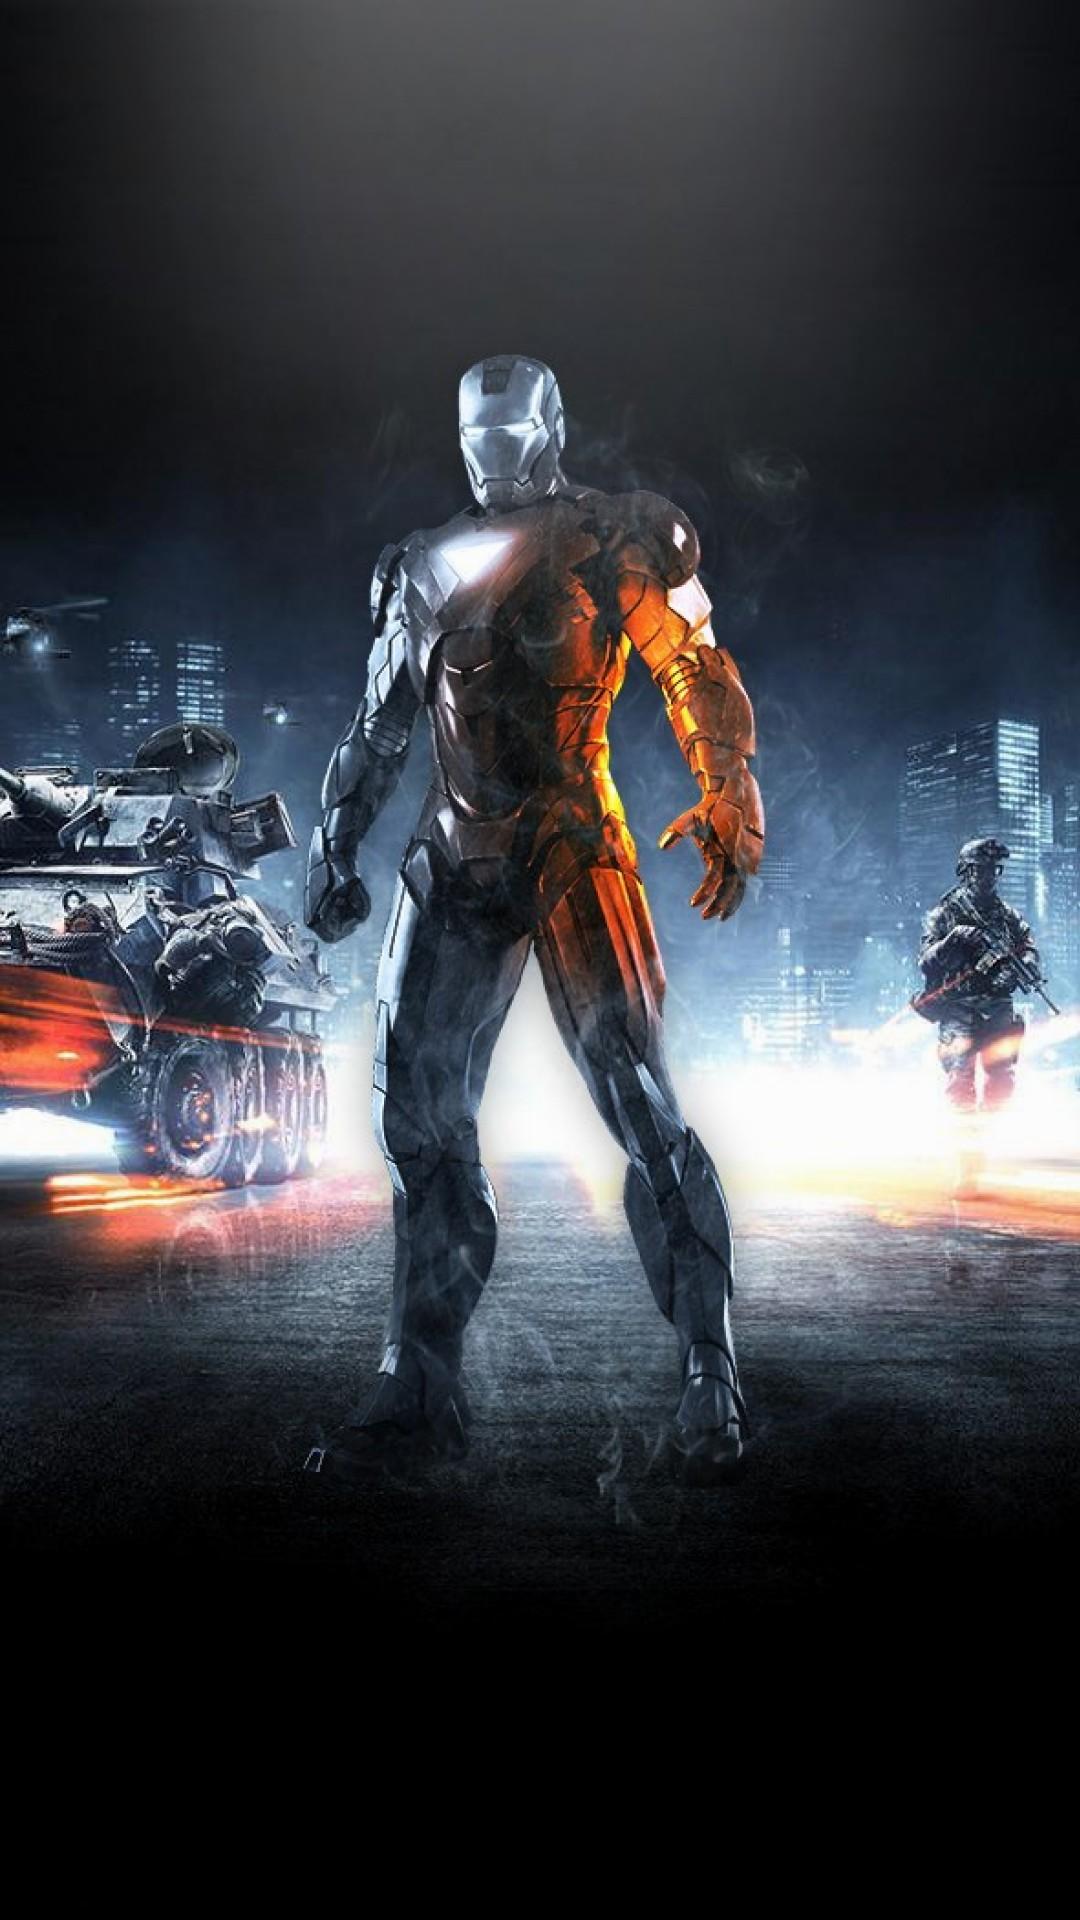 iron man fond d'écran pour android,jeu d'aventure d'action,personnage fictif,film,super héros,film d'action